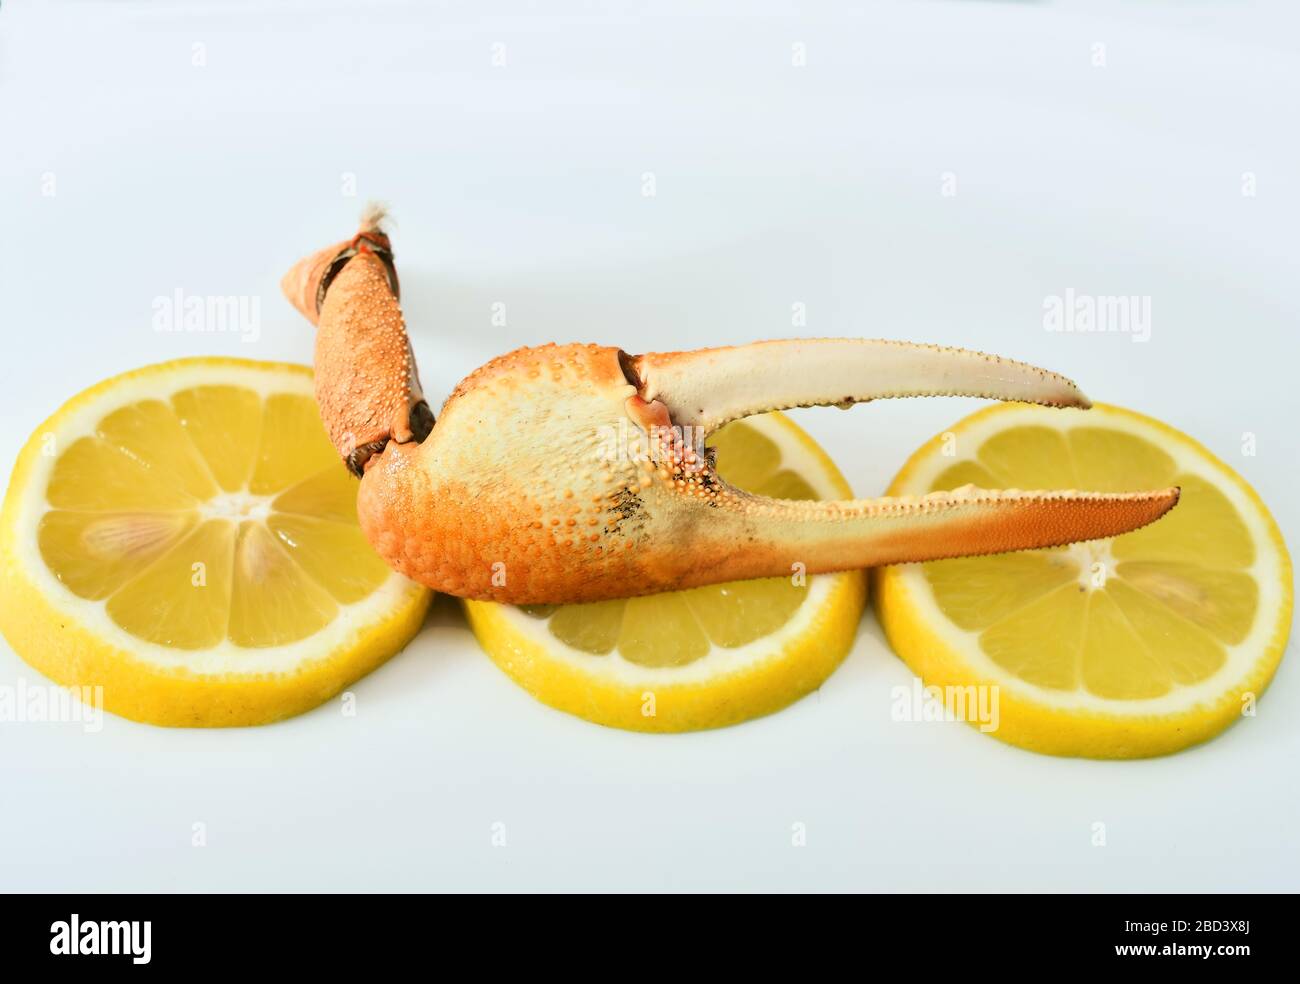 Crabes de fiddler cuites et quartiers de citron. Plat andalou typique Banque D'Images